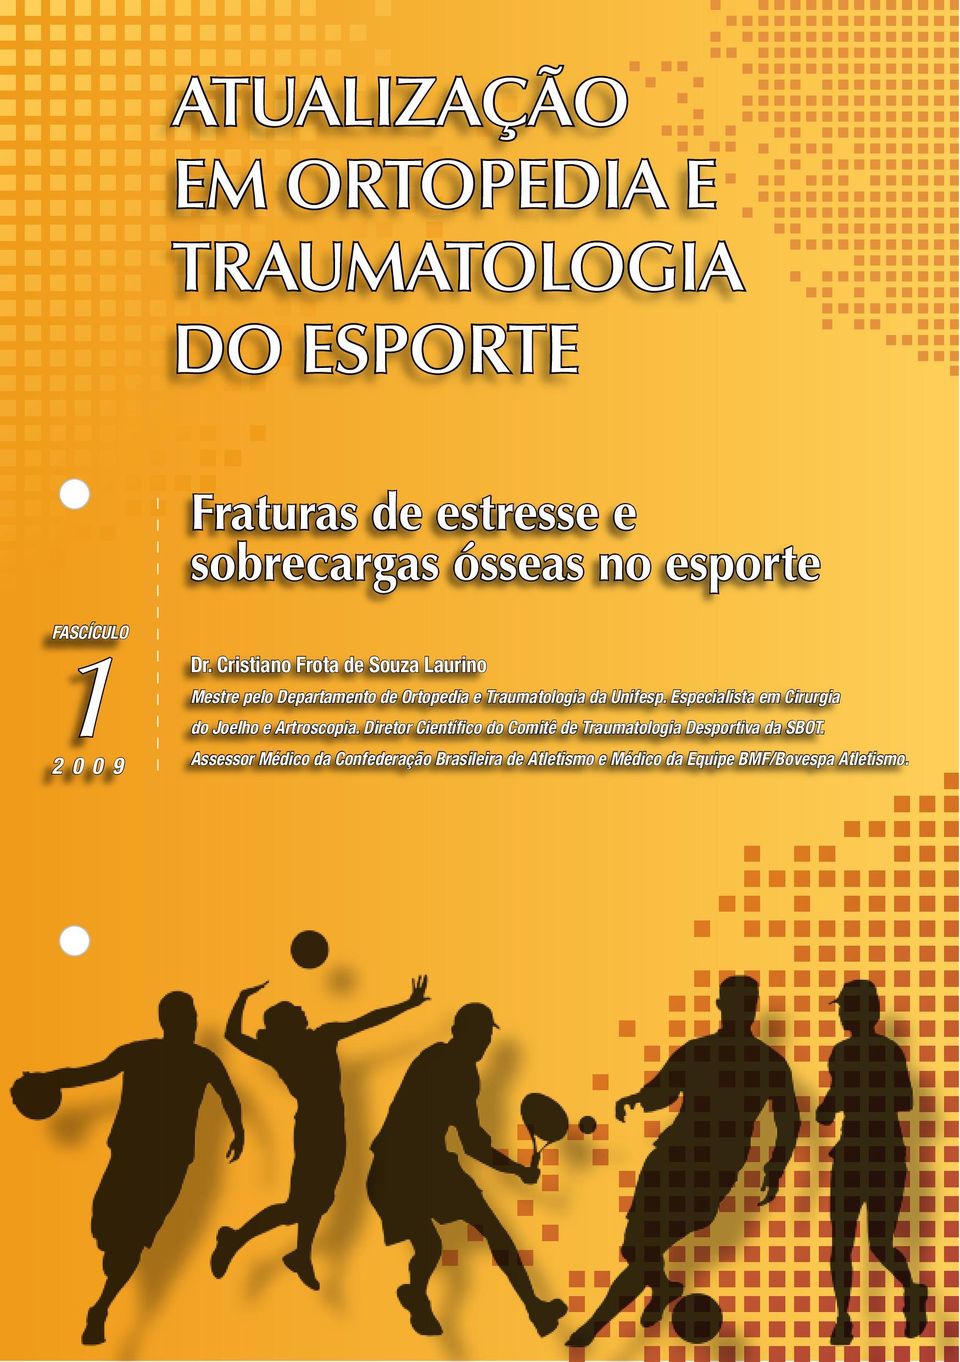 Cristiano Frota de Souza Laurino Mestre pelo Departamento de Ortopedia e Traumatologia da Unifesp.